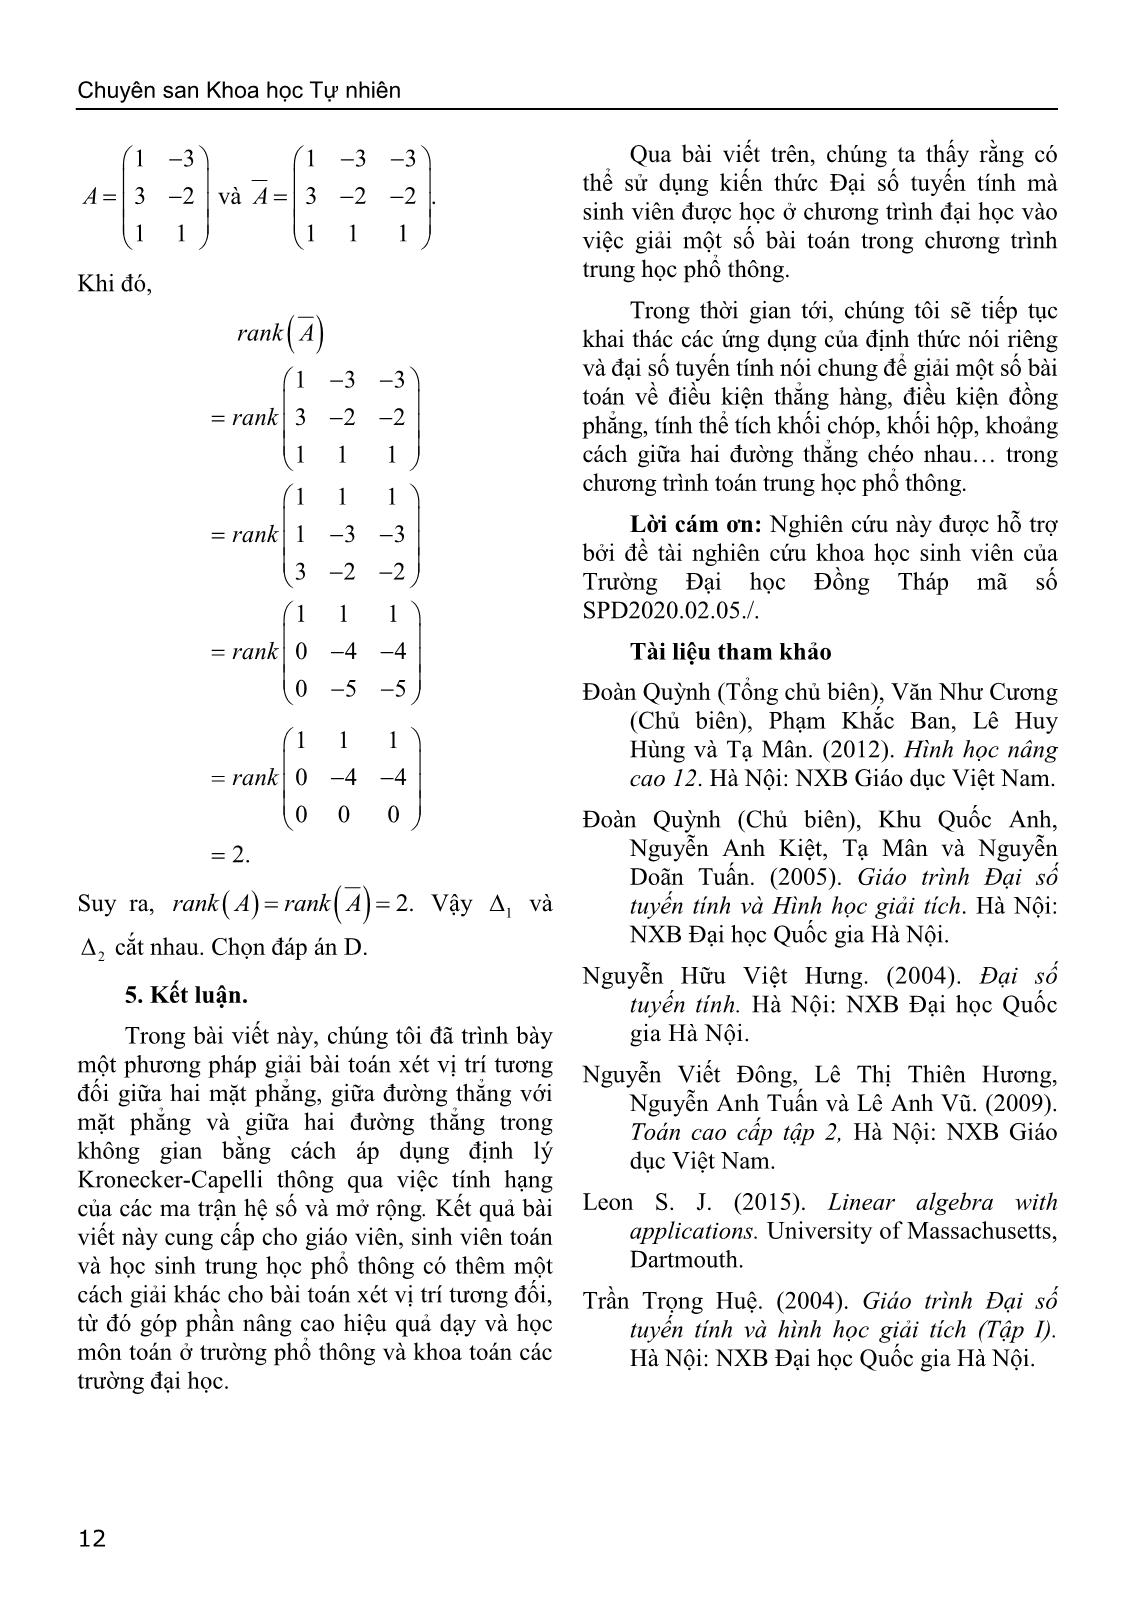 Sử dụng định lý Kronecker-Capelli giải bài toán về vị trí tương đối của hình học giải tích trong không gian trang 10